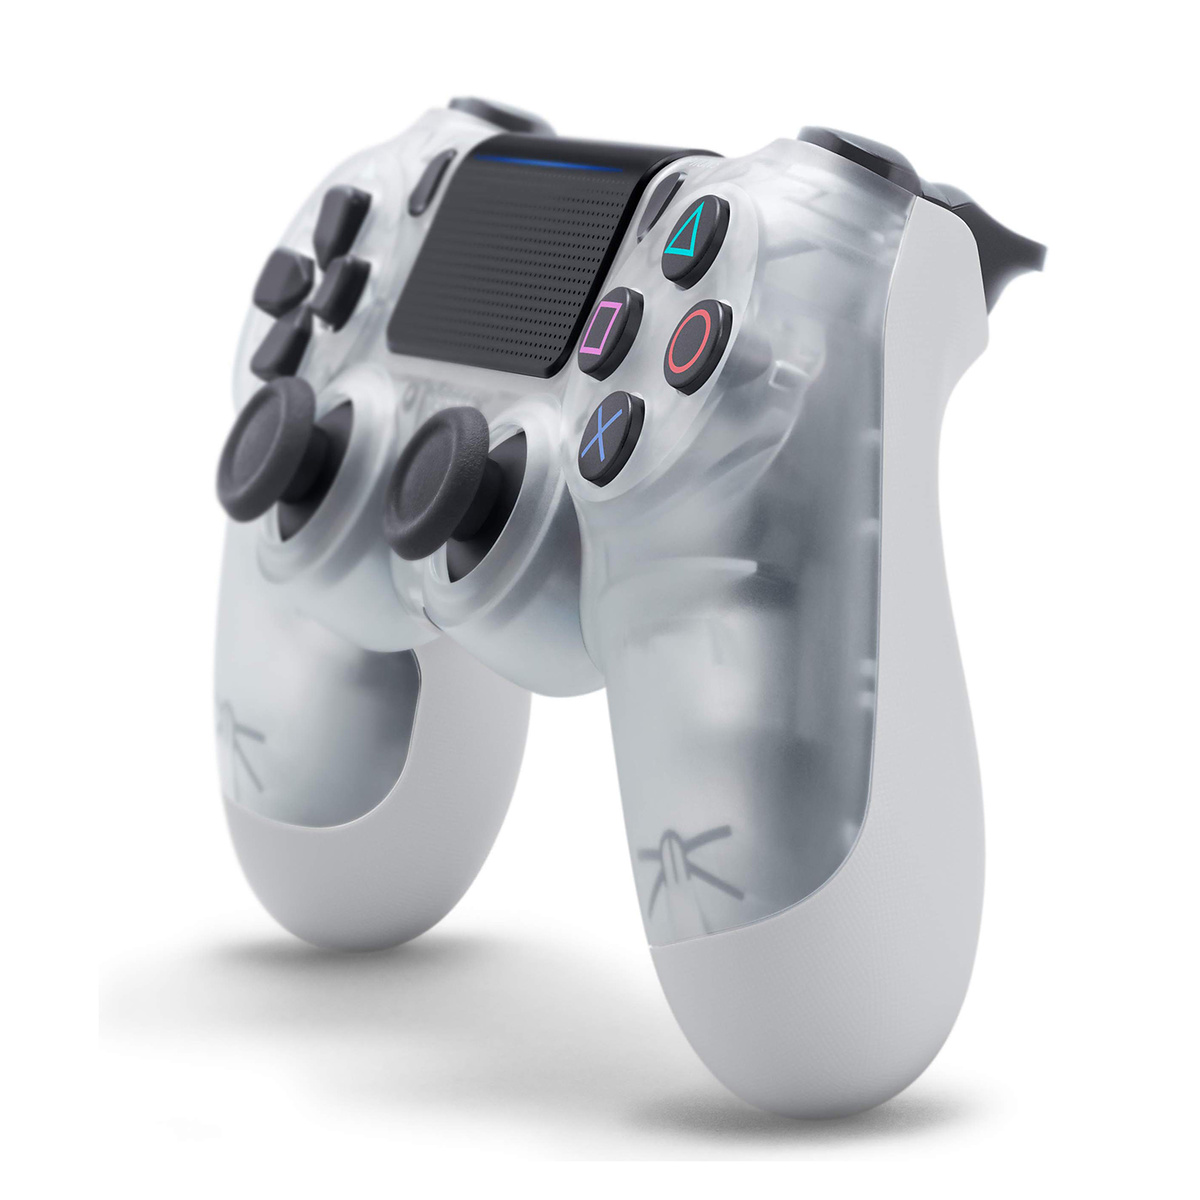 PS4 trådlös handkontroll, kristall vit